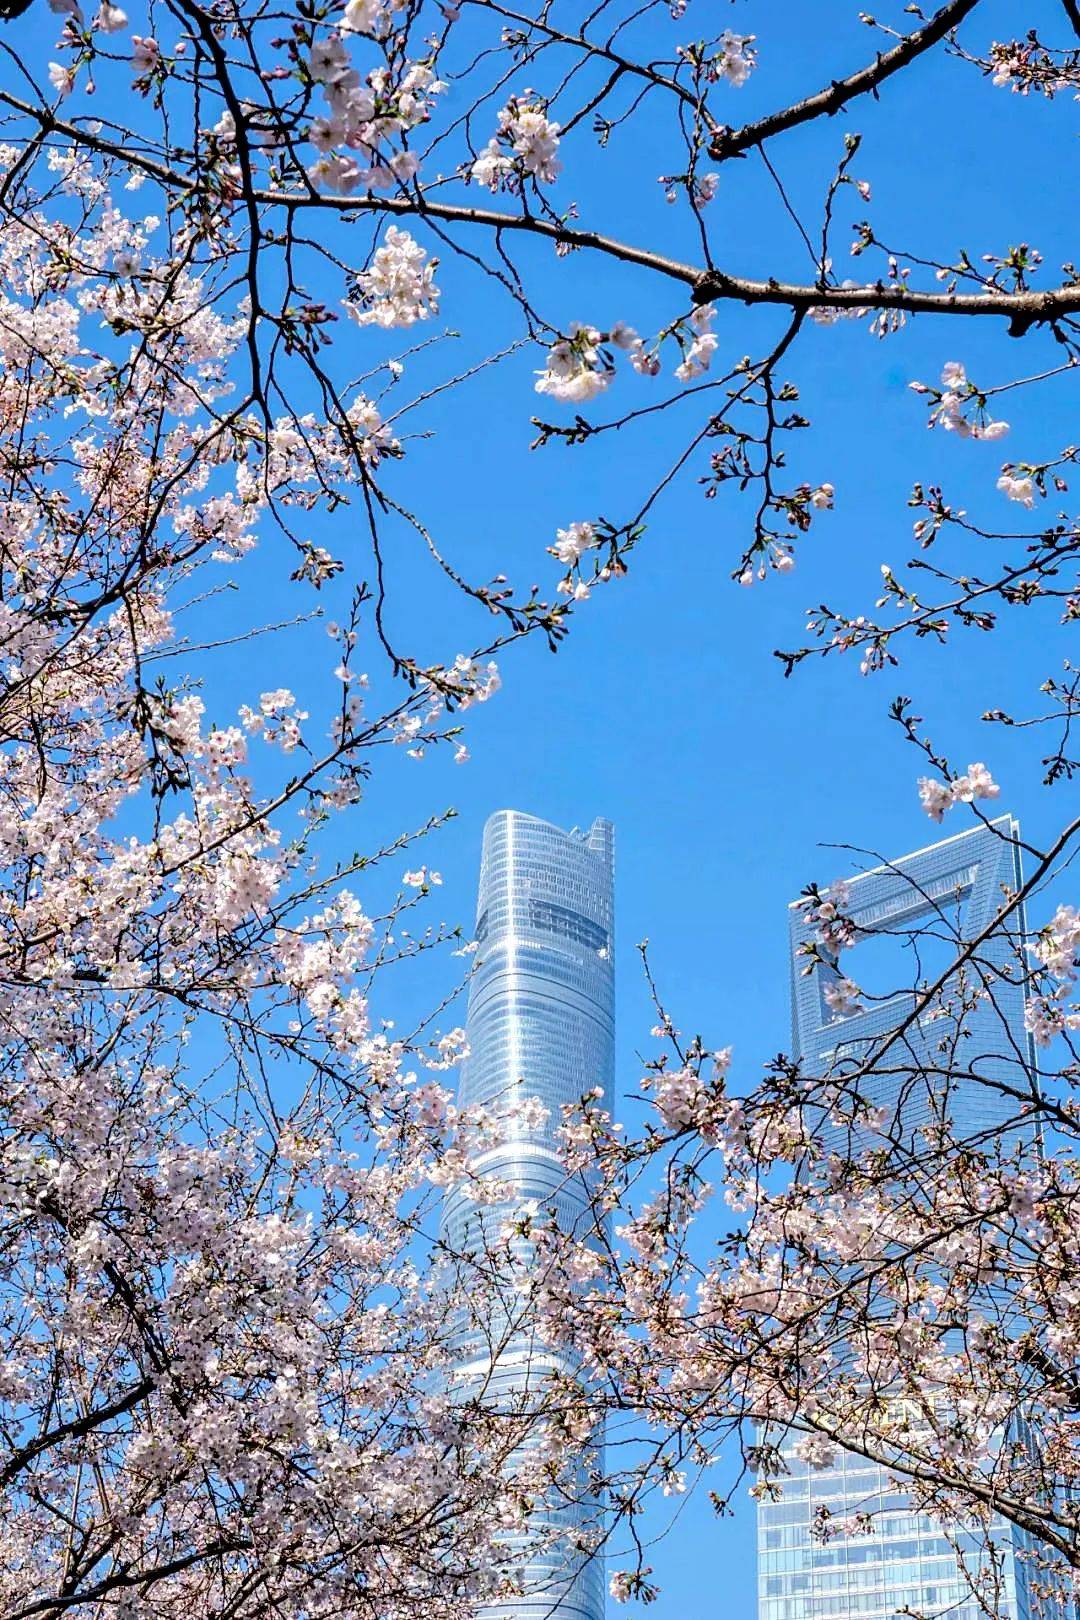 3456㎡，87株樱花树！小布带你去“最美地铁口”赏樱花